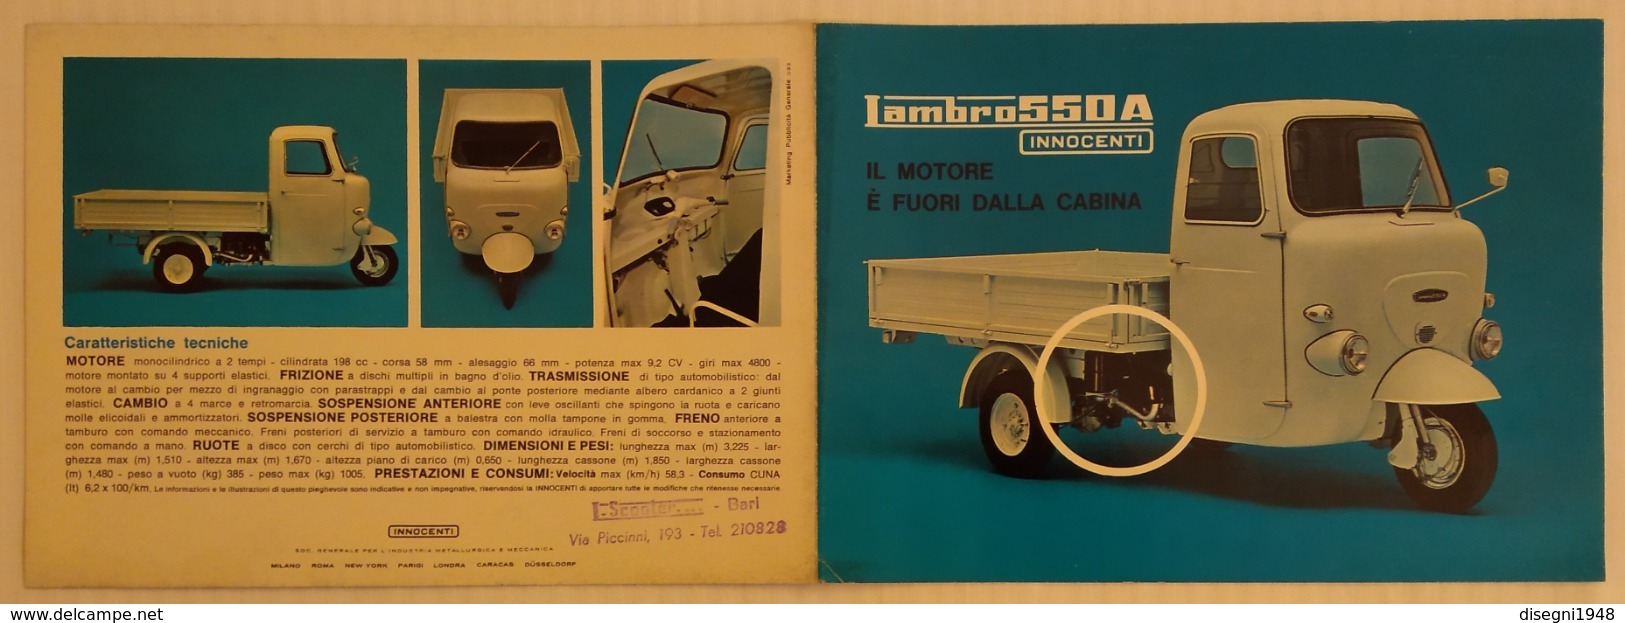 08619 "LAMBRO 550A - INNOCENTI - 1965 / 1967" PIEGHEVOLE ILLUSTRATO ORIGINALE - Moto